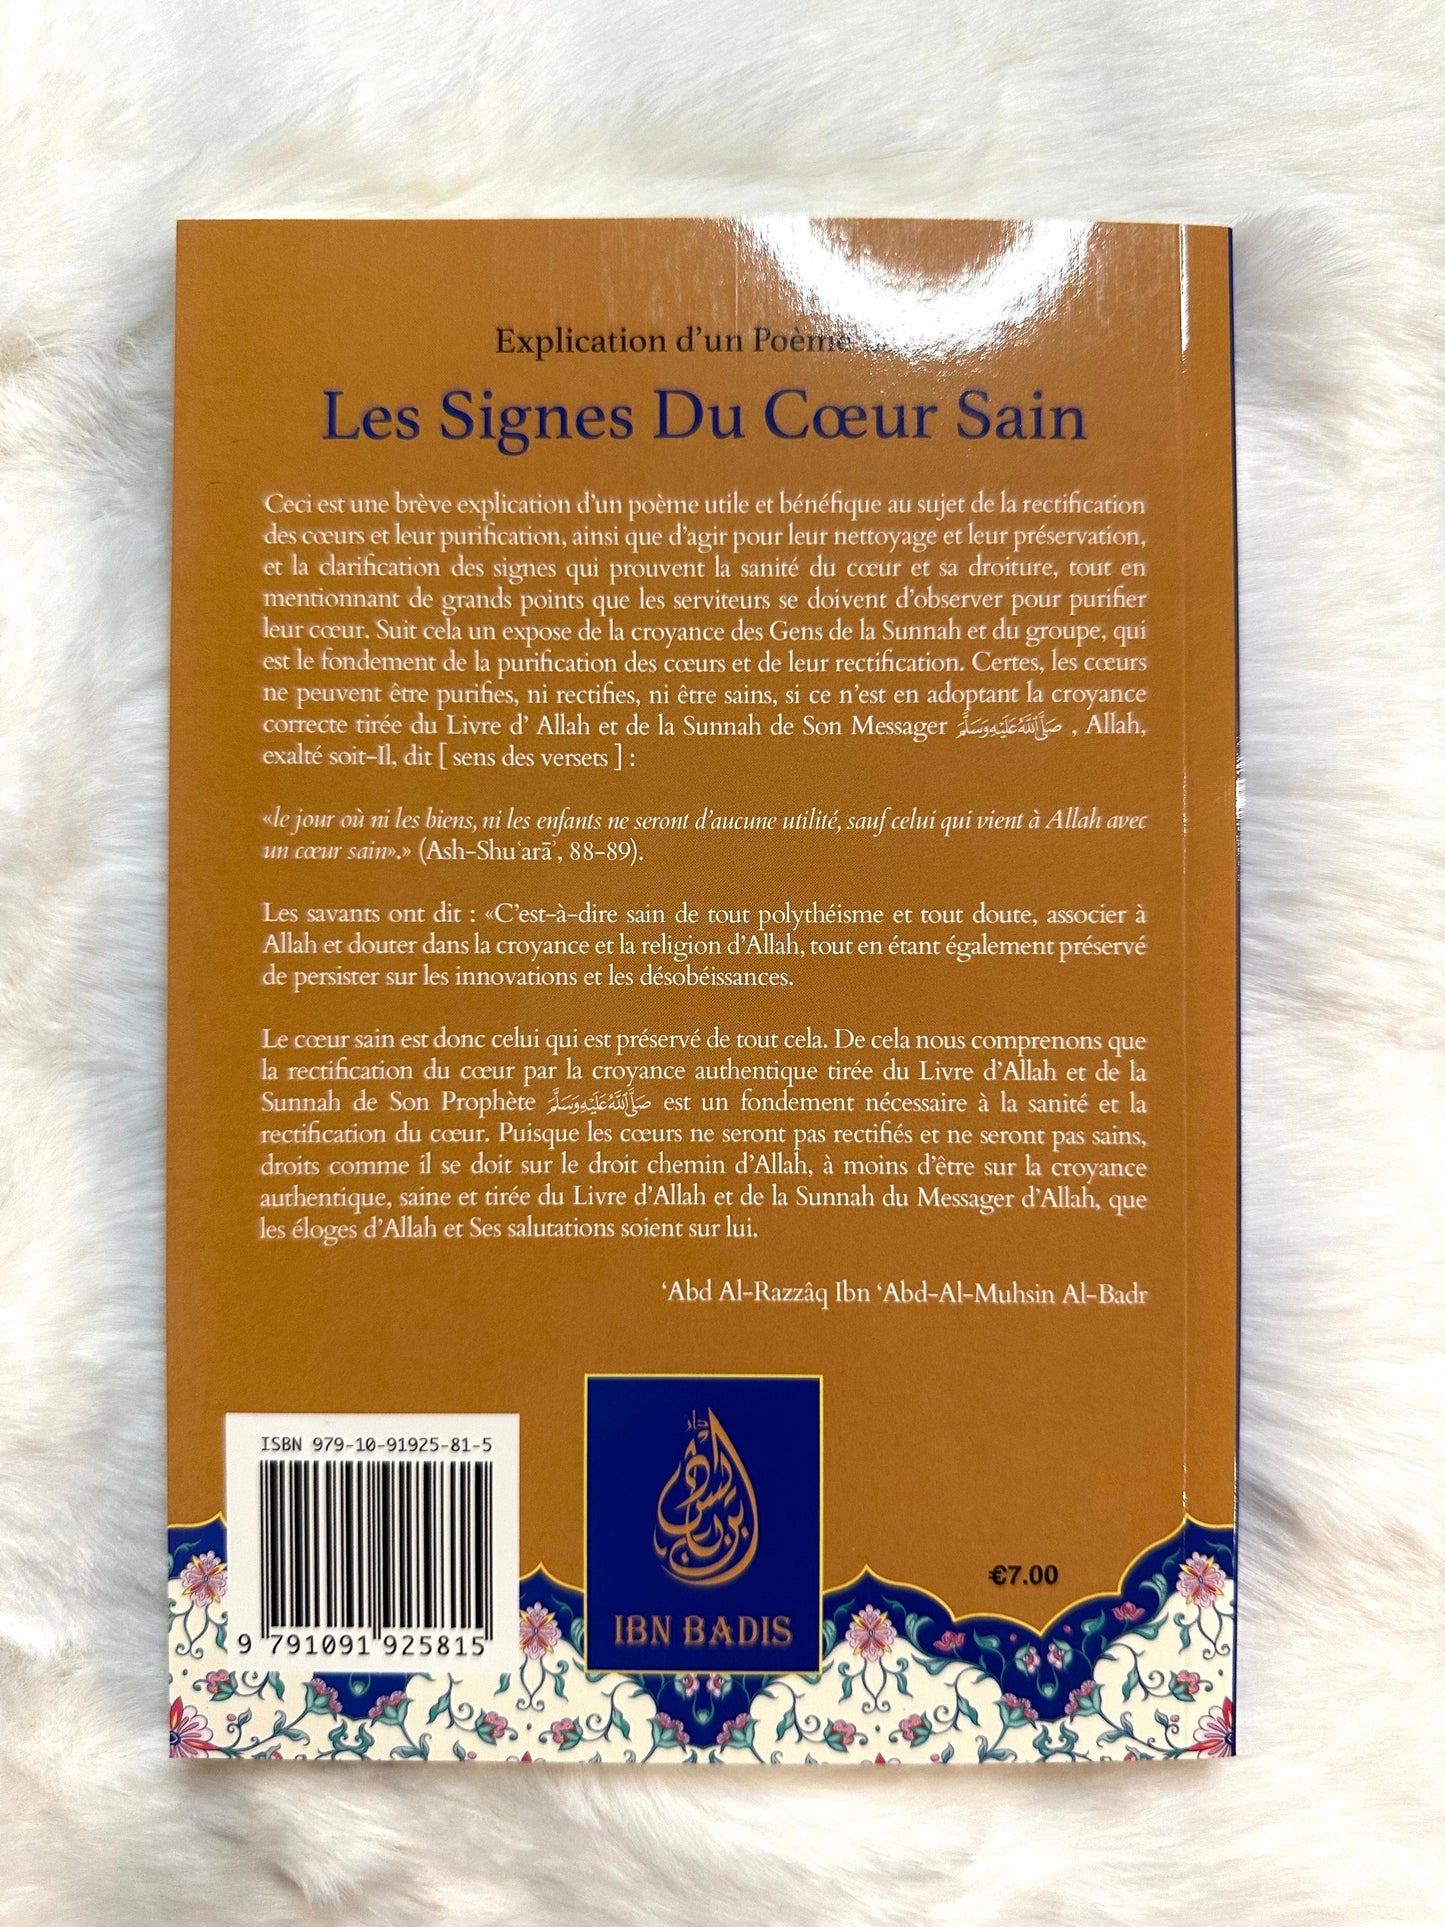 Explication D'un Poème Sur Les Signes Du Cœur Sain , De L'éminence Sulaymãn Samhãn, Par Abd Ar-Razzâq Abd Al-Muhsin Al-Badr